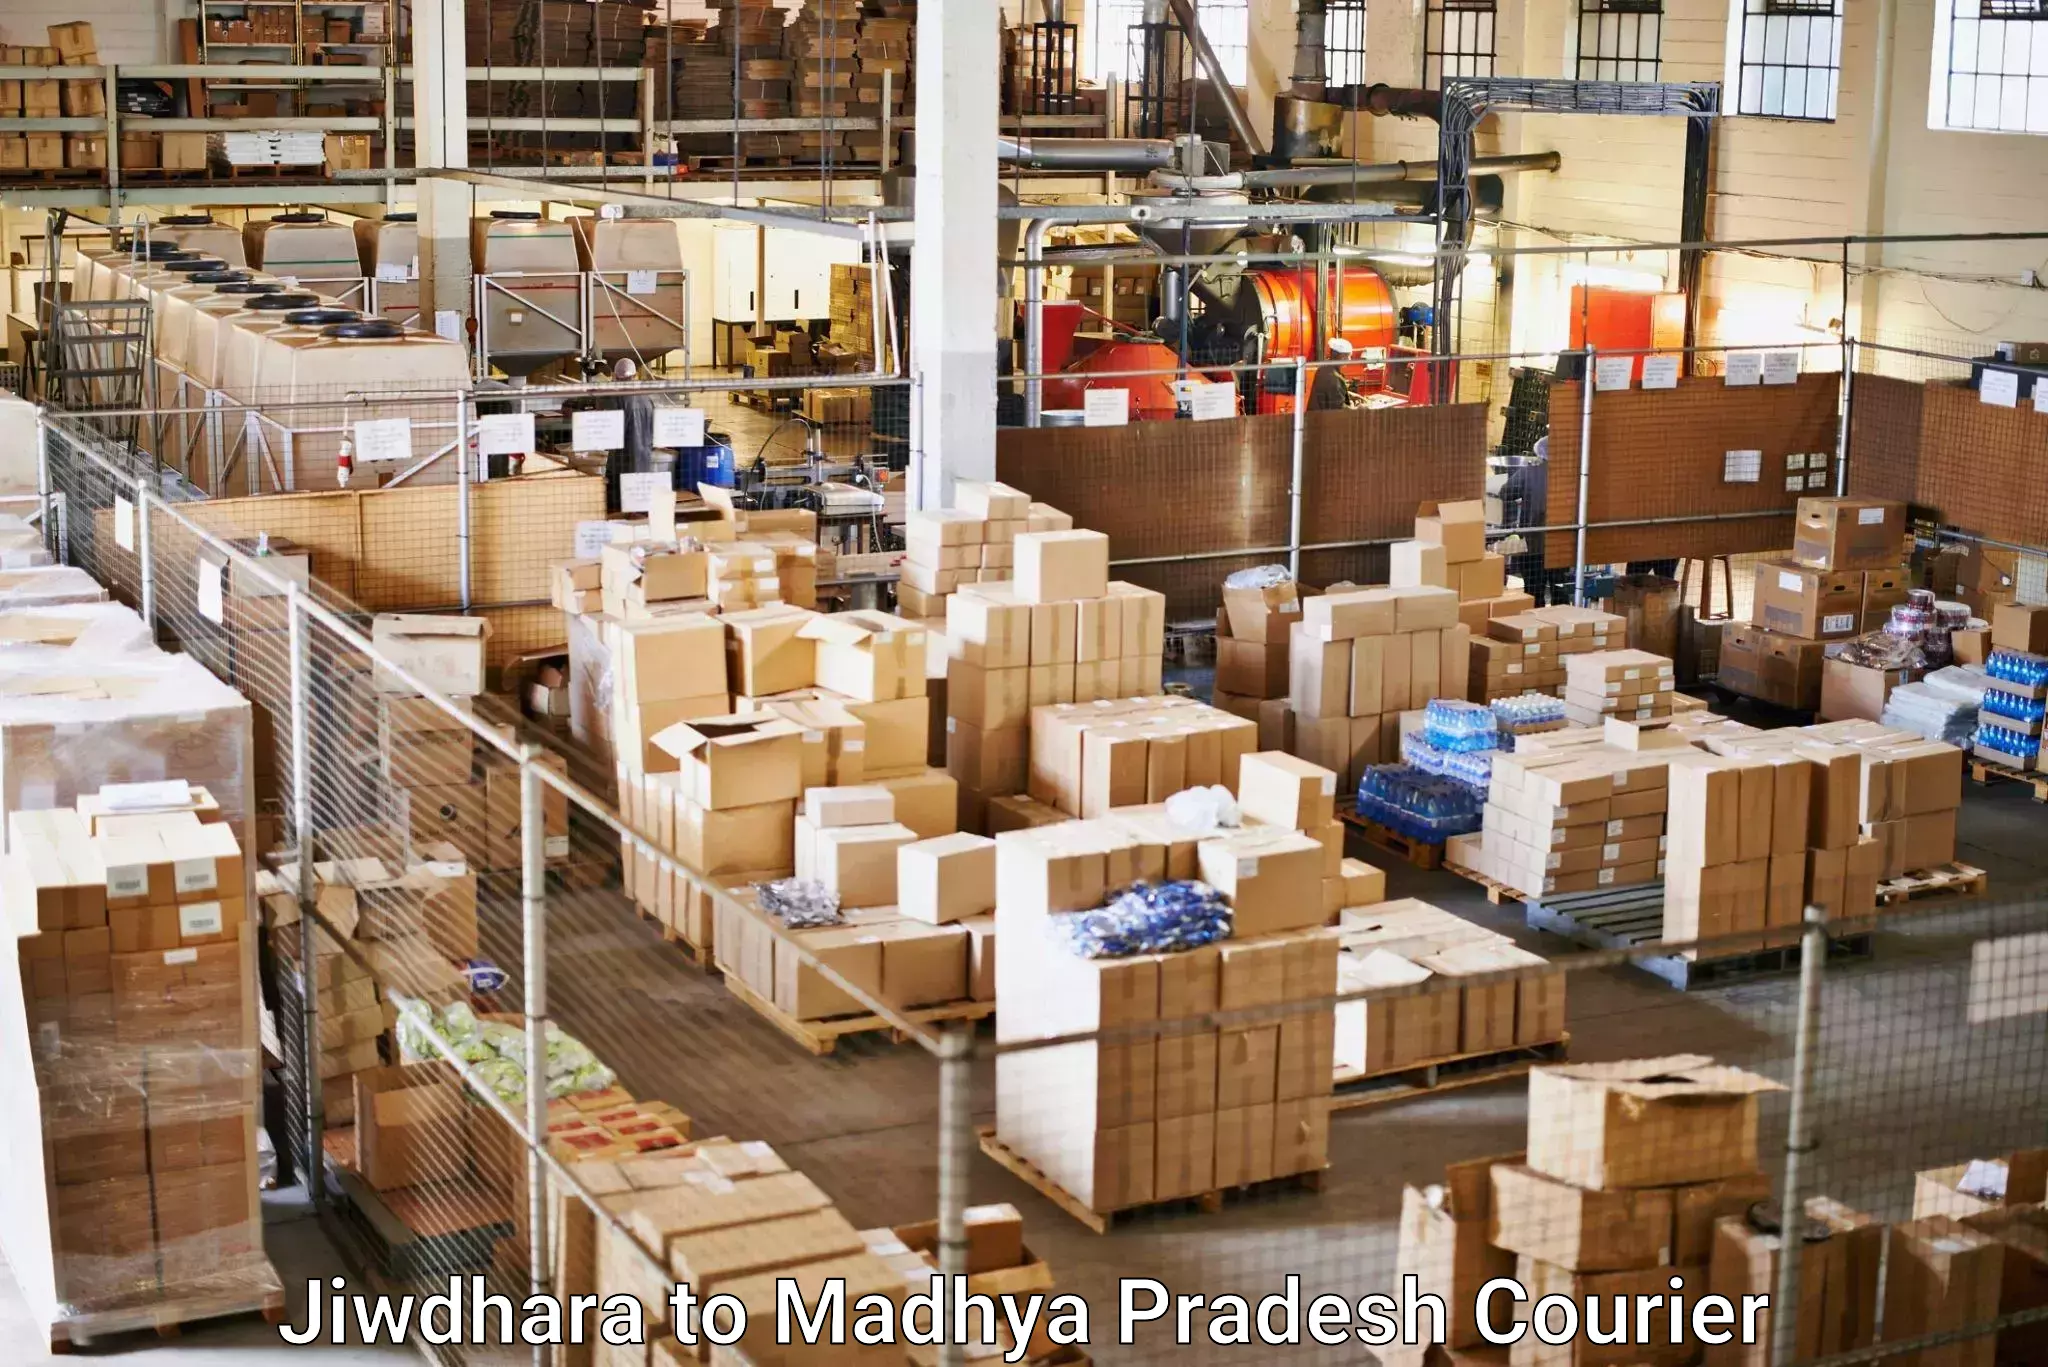 End-to-end delivery Jiwdhara to Madhya Pradesh